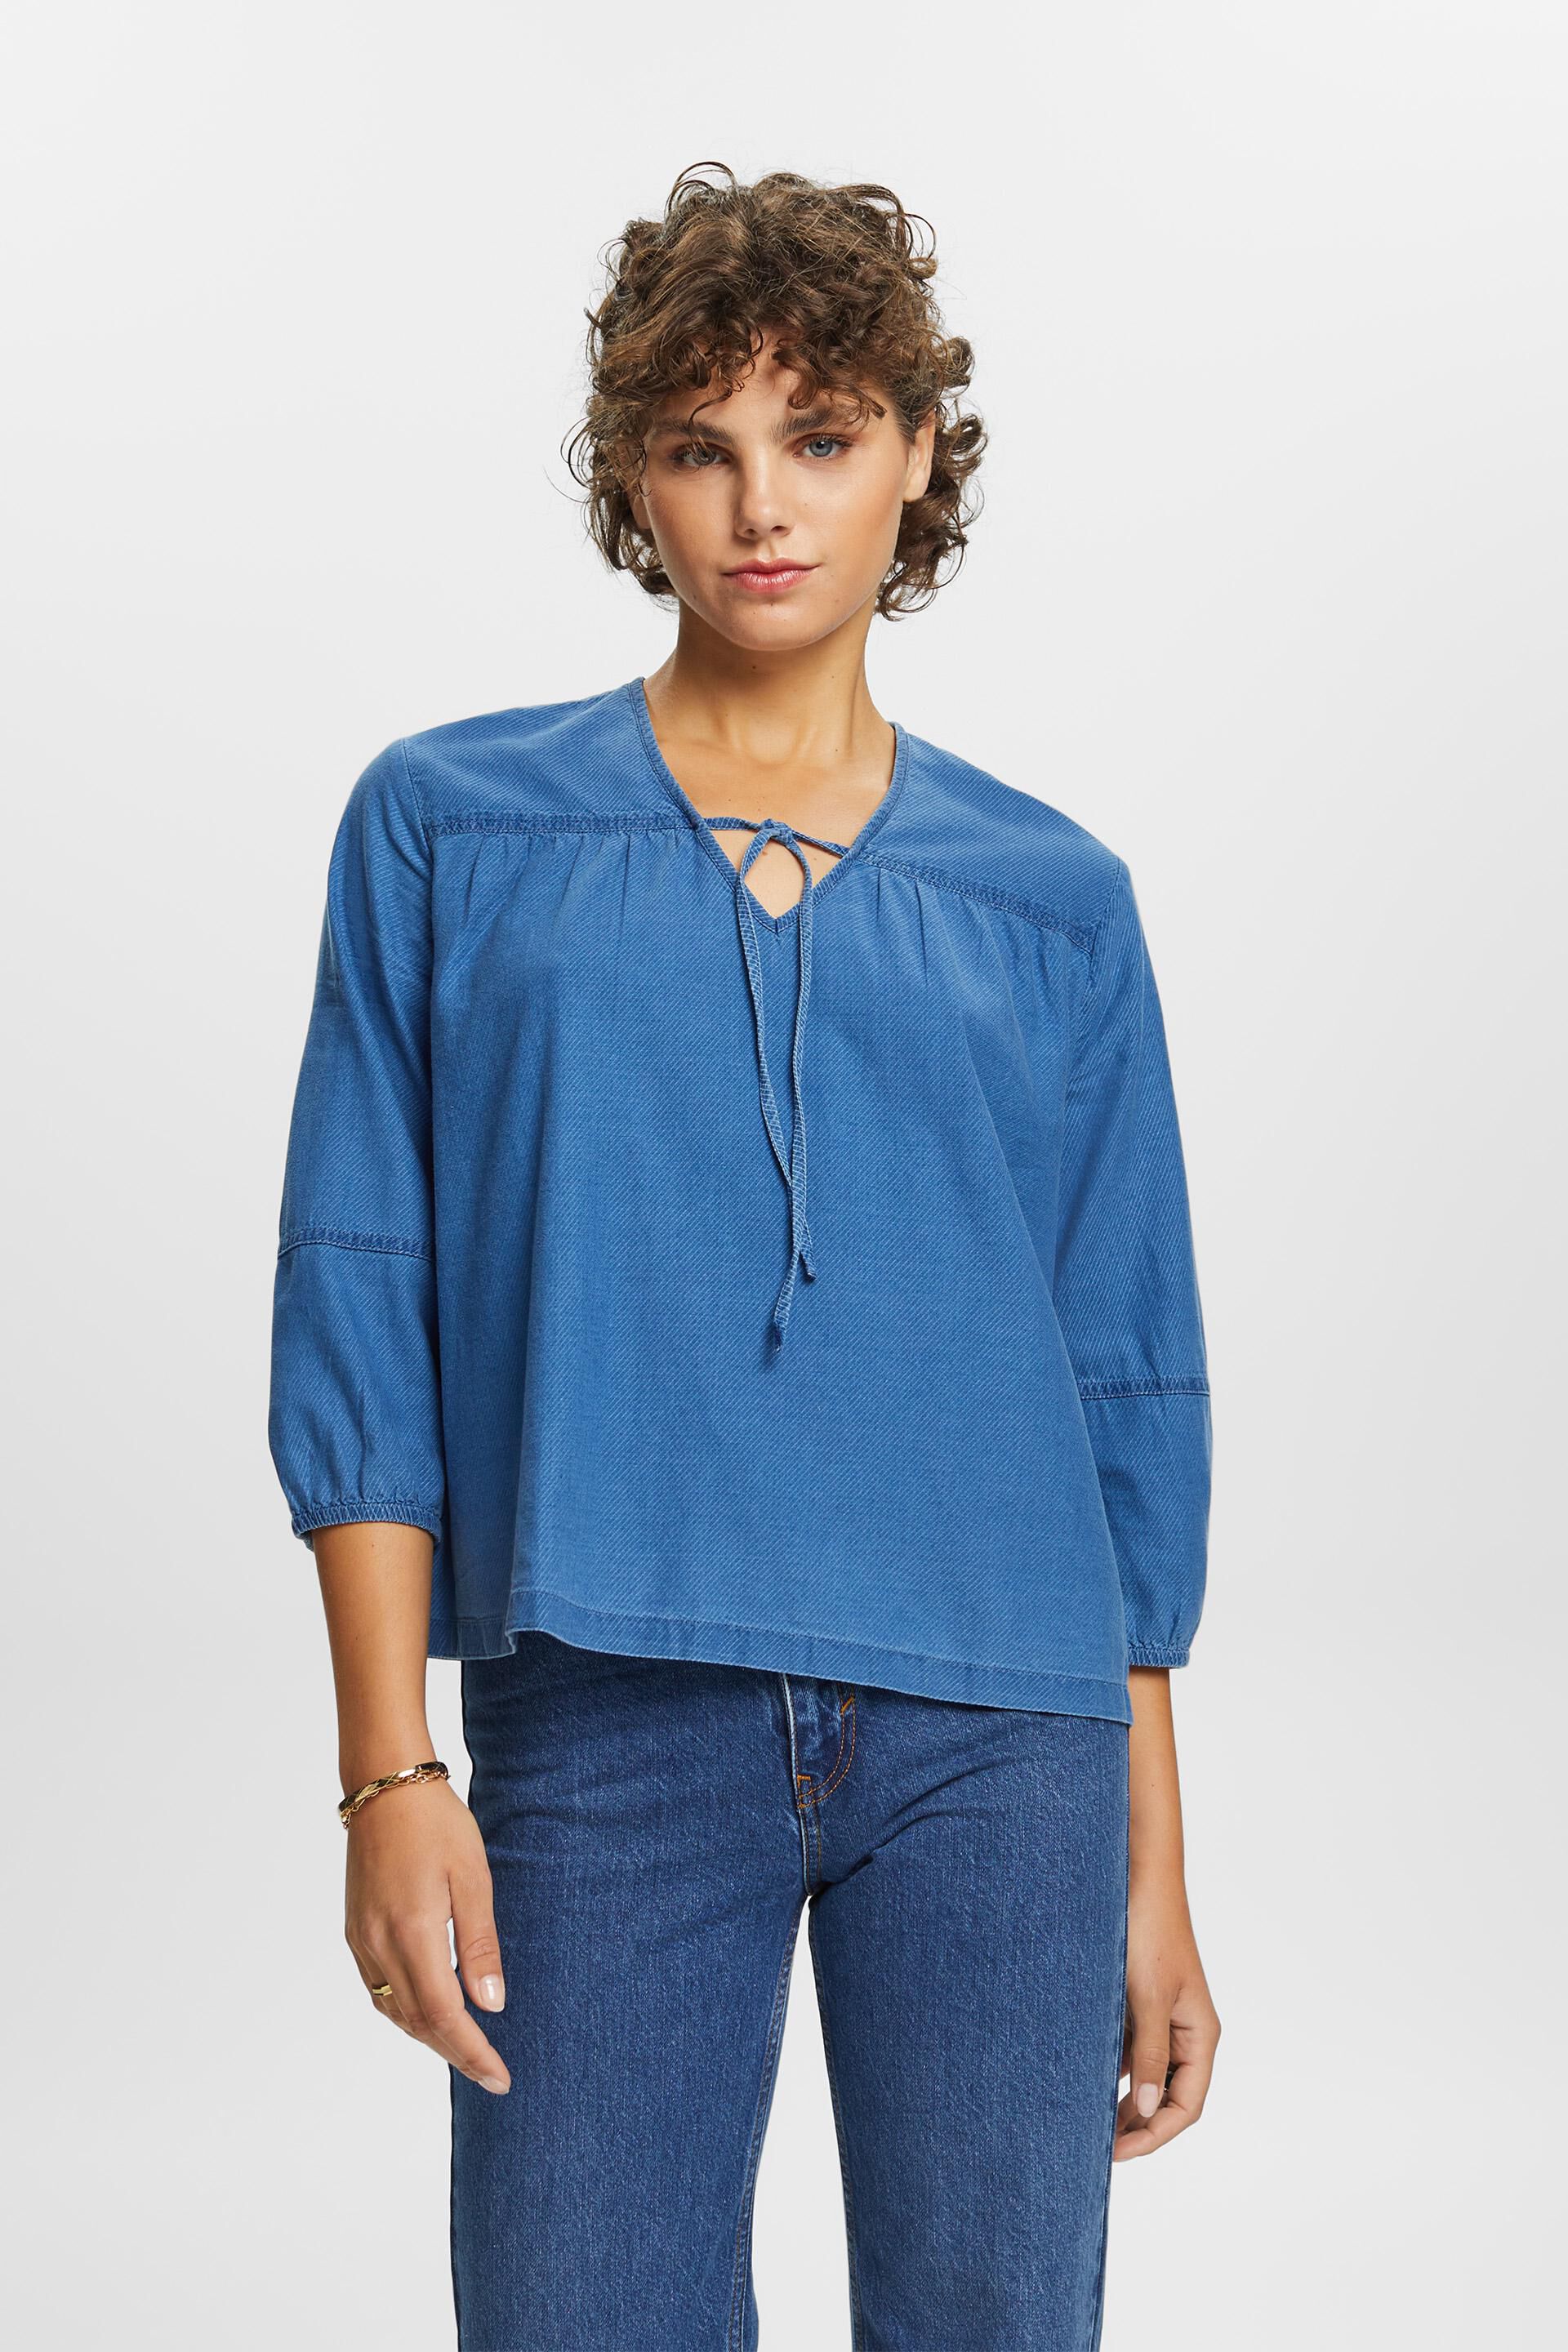 ESPRIT - Bluse aus Baumwolltwill Shop in Online unserem